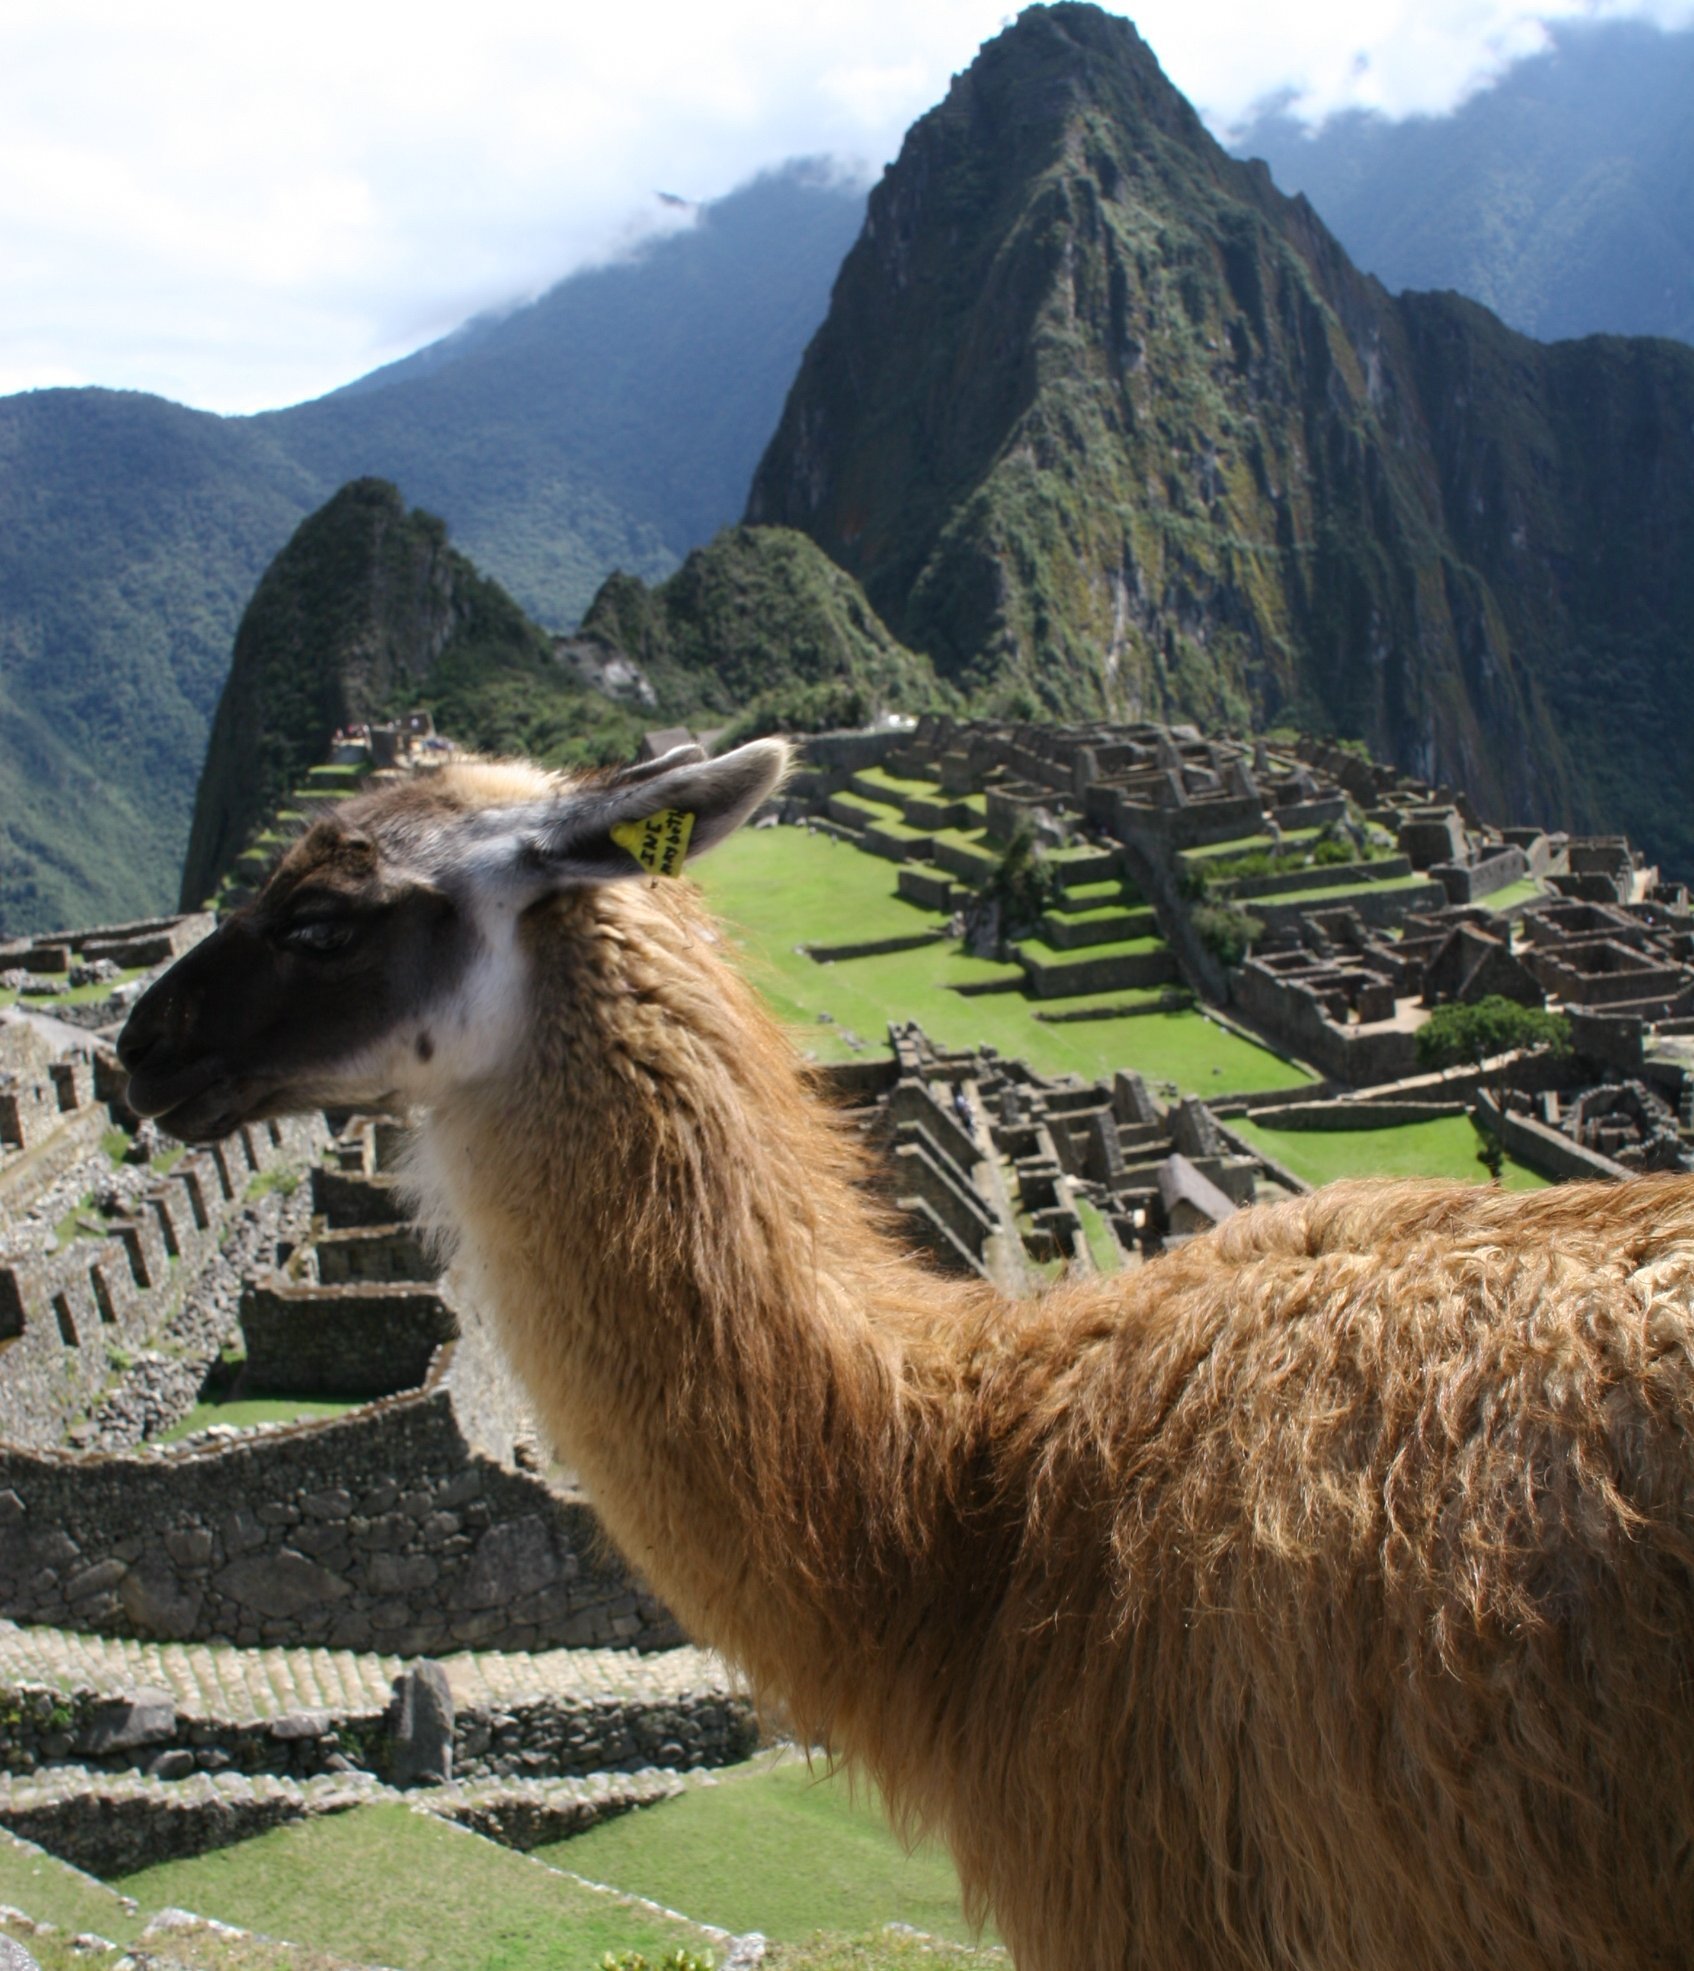 Fernreiseziele mit Kindern im Sommer - Tipps für Fernreisen im Sommer mit Kindern - Lama vor dem Machu Picchu